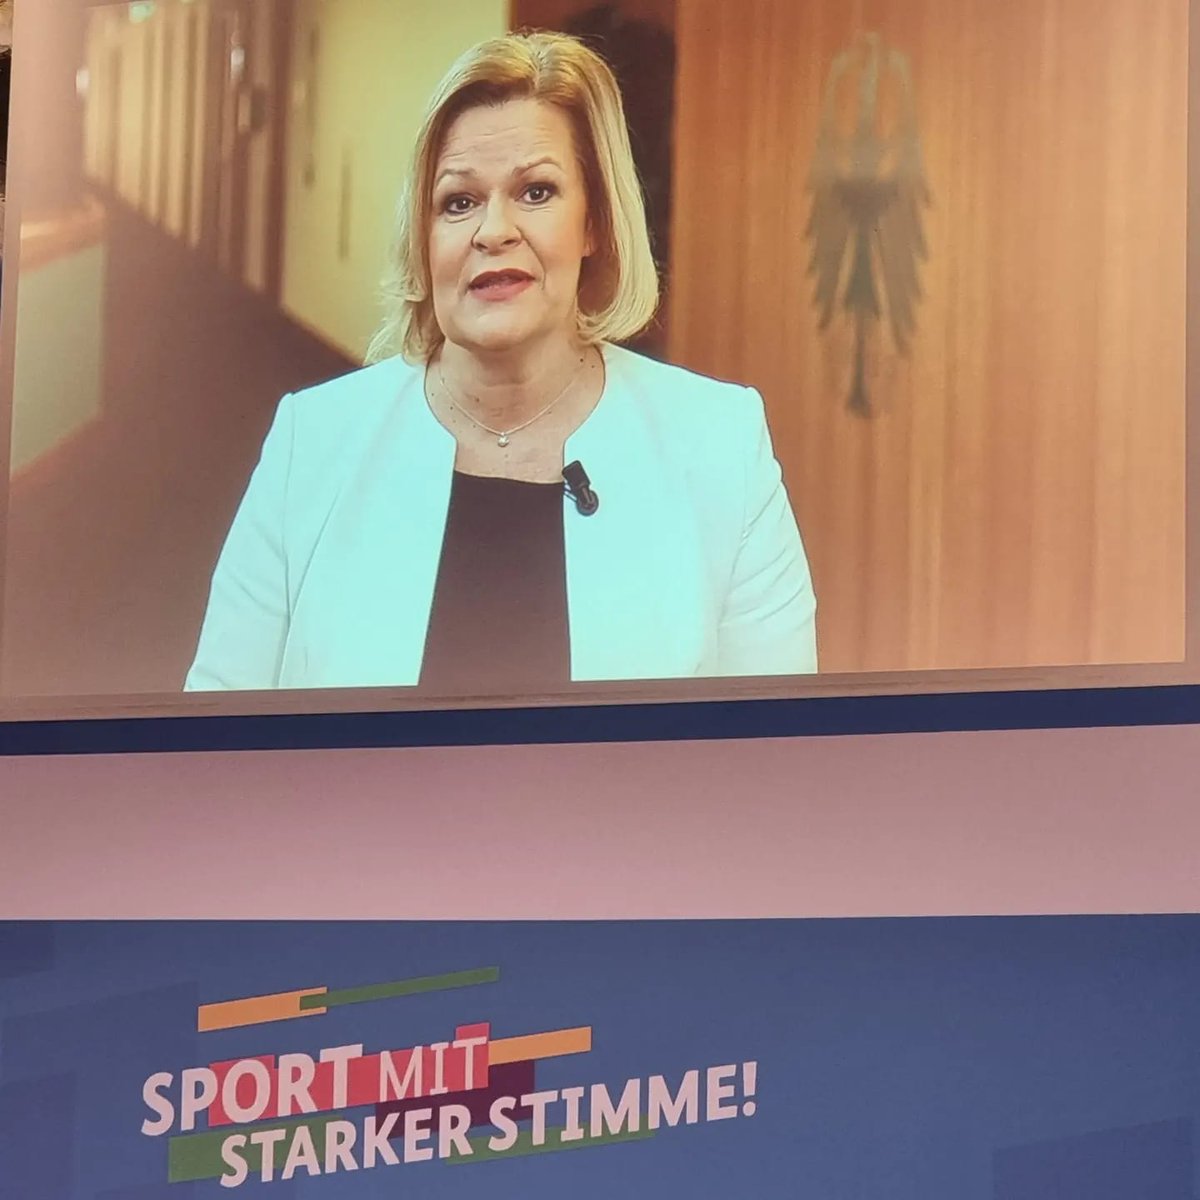 Sport mit starker Stimme! Wir begrüßen heute zusammen mit dem @BMI_Bund und dem @BISp_Bund zahlreiche Gäste in Berlin, um das „Bundesprogramm gegen Rechtsextremismus und Menschenfeindlichkeit im Sport“ vorzustellen. #SportMitCourage dsj.de/news/sport-mit…